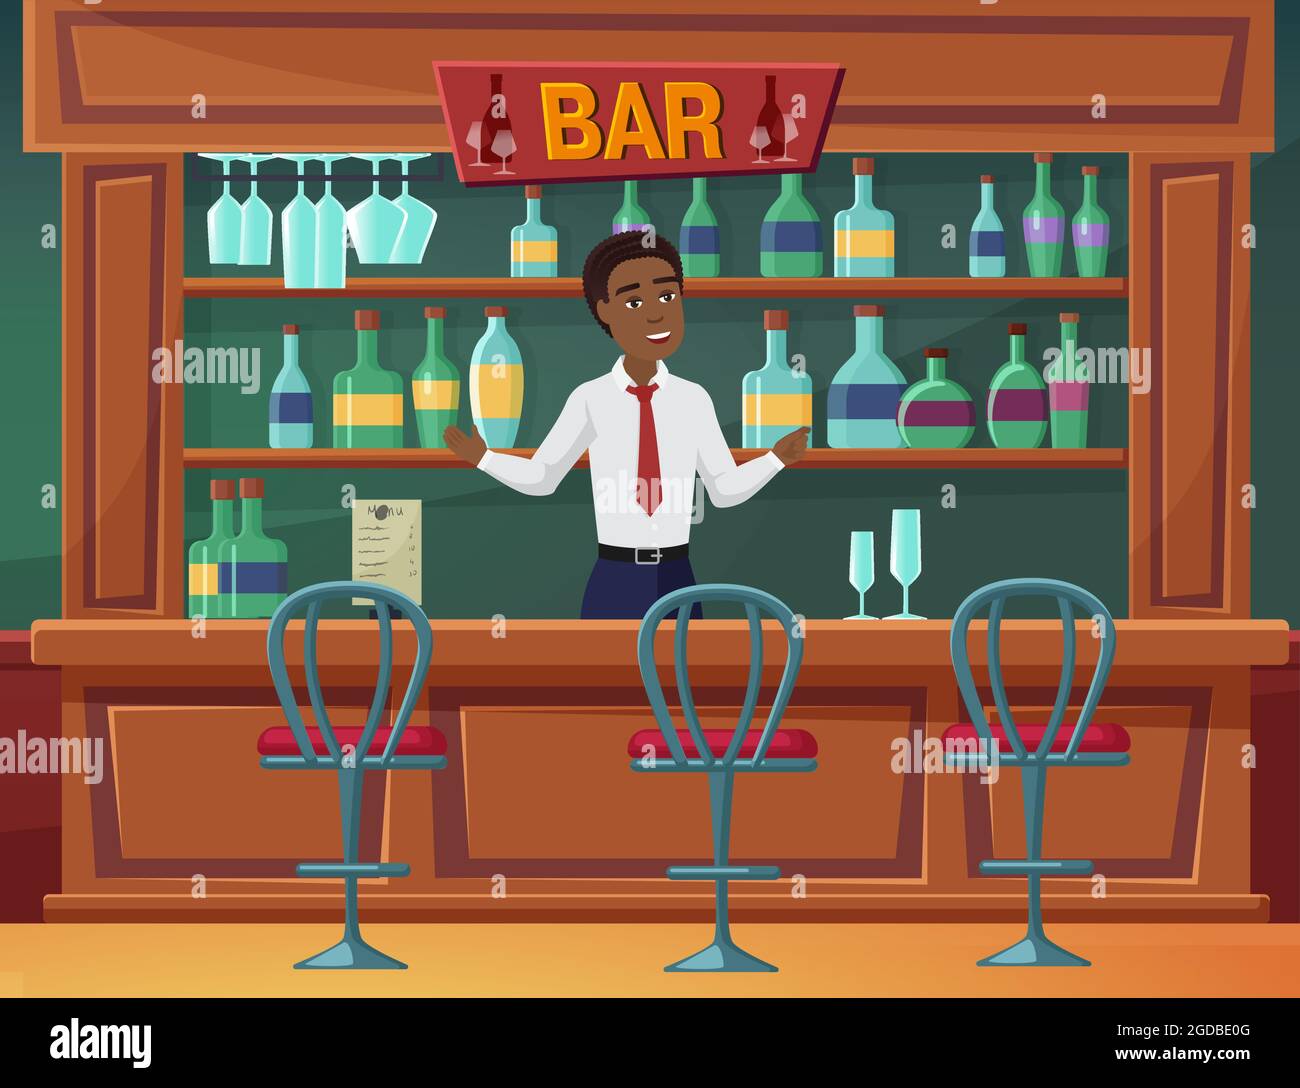 Bienvenue au bar, illustration vectorielle de service de restauration.  Homme de dessin animé propriétaire d'un bar-boutique, d'un café ou d'un  restaurant, debout derrière un comptoir de bar en bois, bouteilles d'alcool  sur